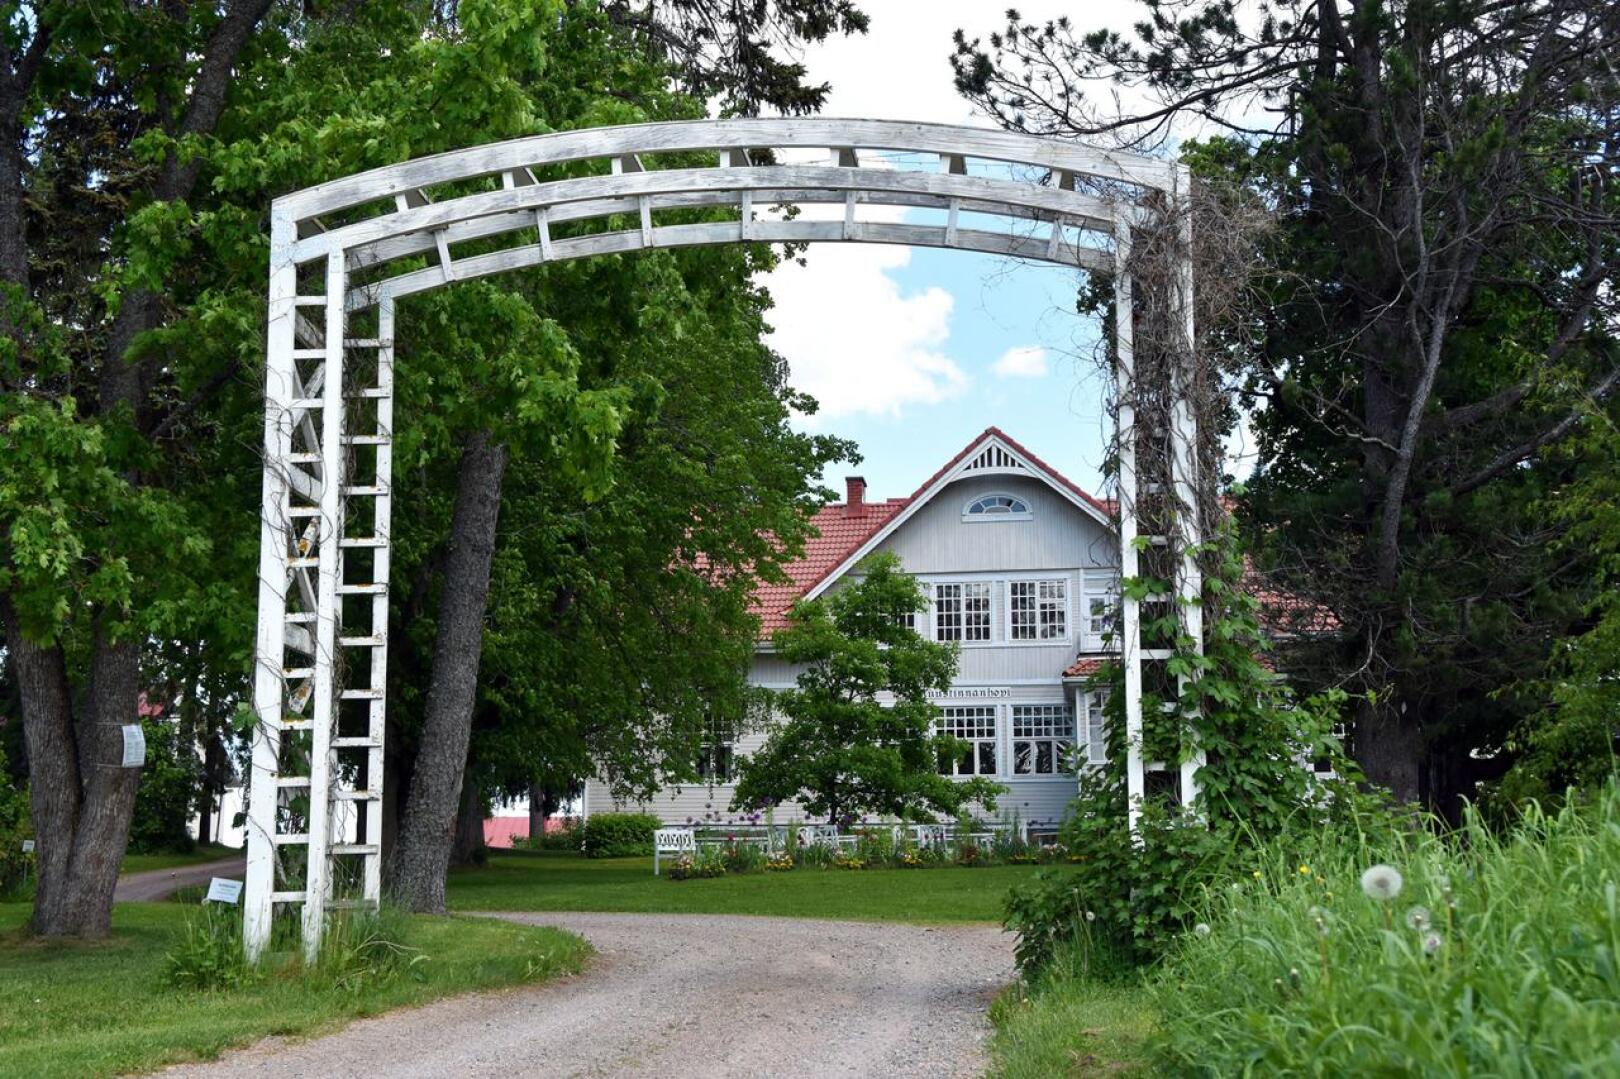 Jedu omistaa muun muassa Ruustinnanhovin sekä sitä ympröivän puistoalueen ja puutarhan.